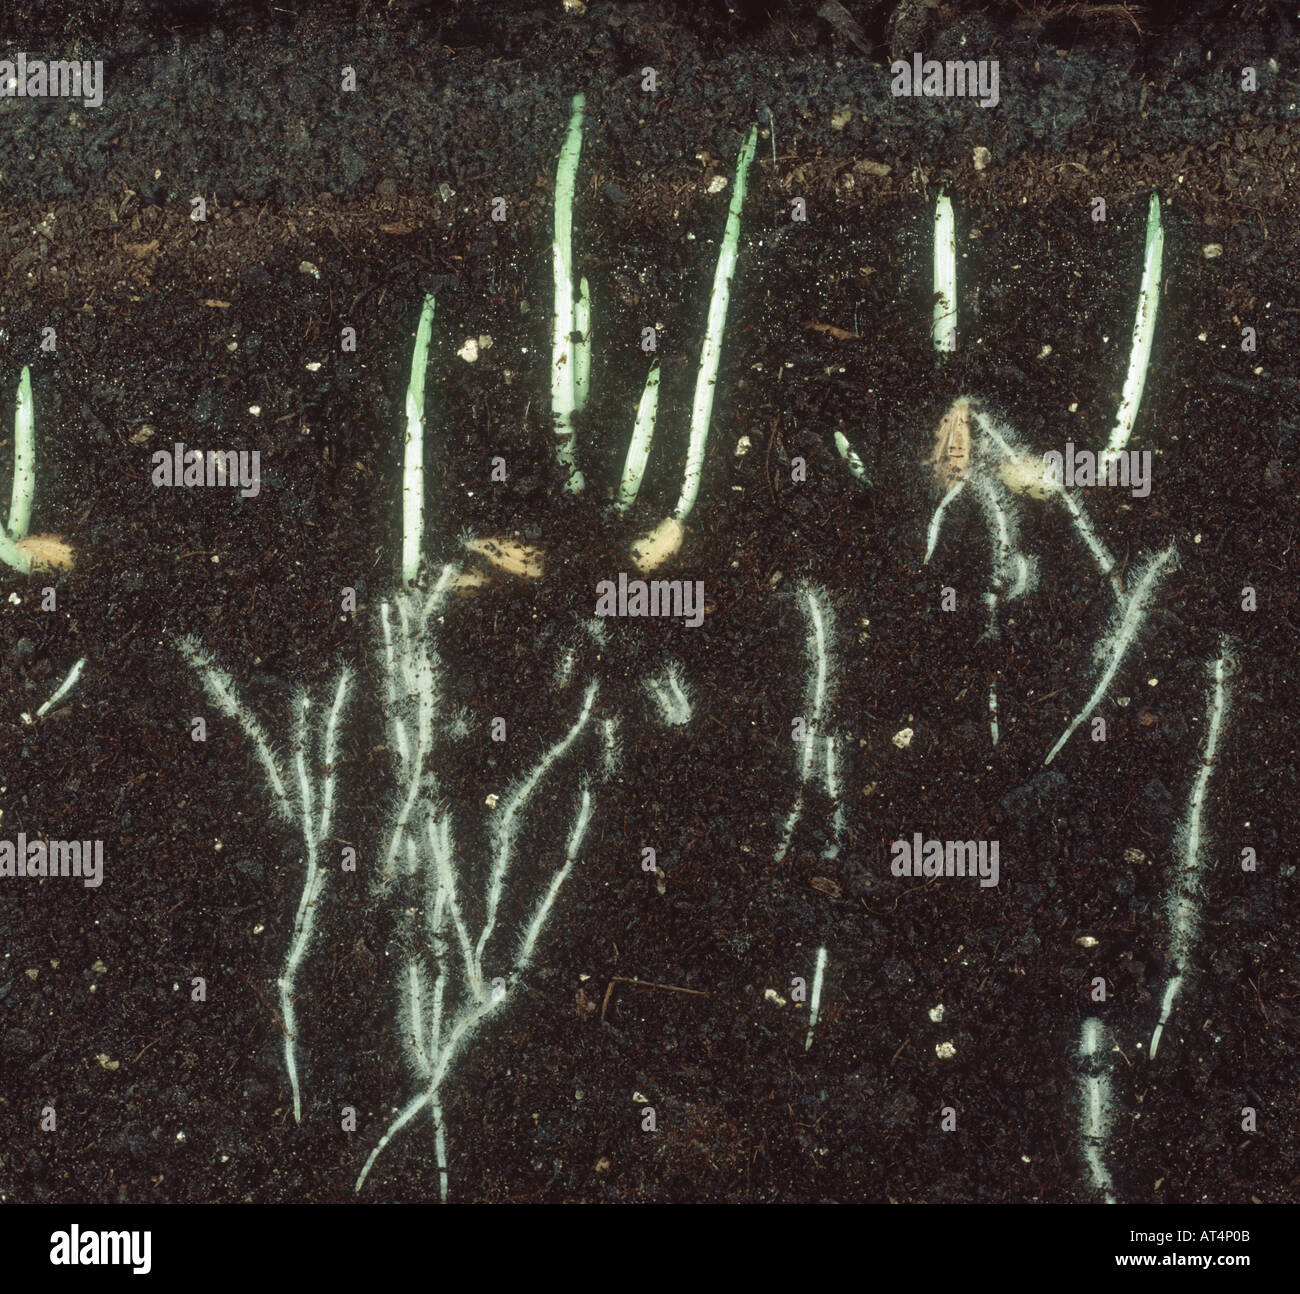 La germinazione di semi di orzo che mostra lo sviluppo della radice come germogli iniziano ad emergere Foto Stock